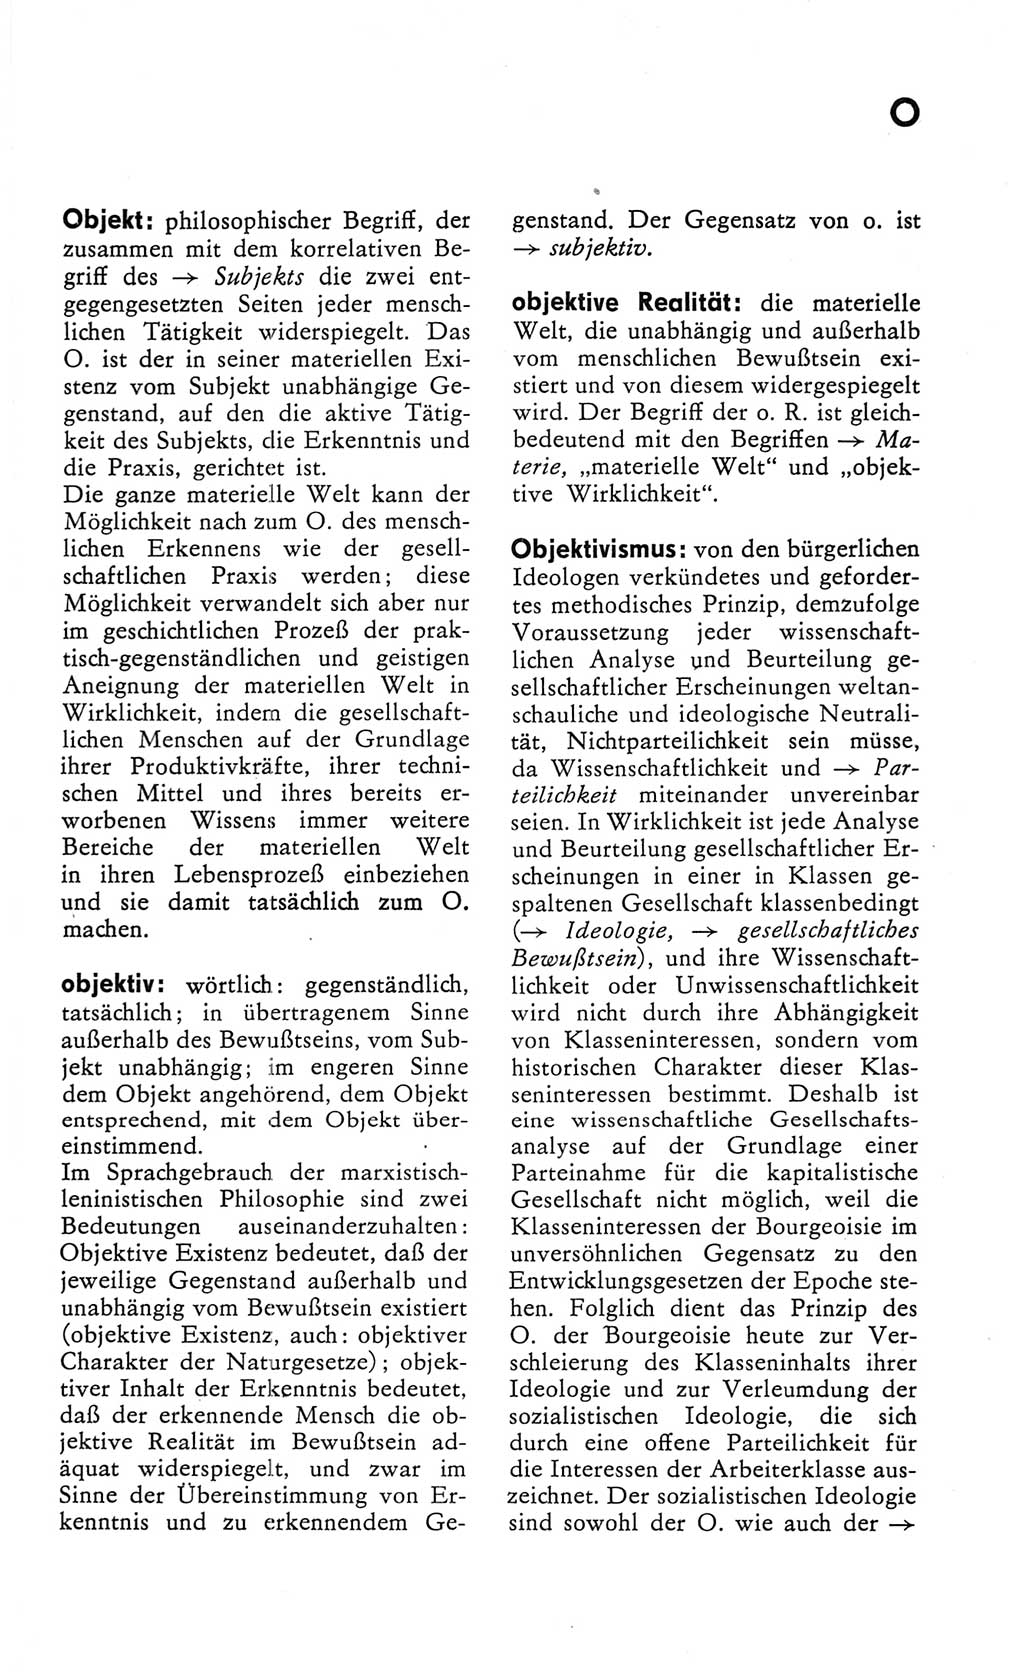 Kleines Wörterbuch der marxistisch-leninistischen Philosophie [Deutsche Demokratische Republik (DDR)] 1982, Seite 237 (Kl. Wb. ML Phil. DDR 1982, S. 237)